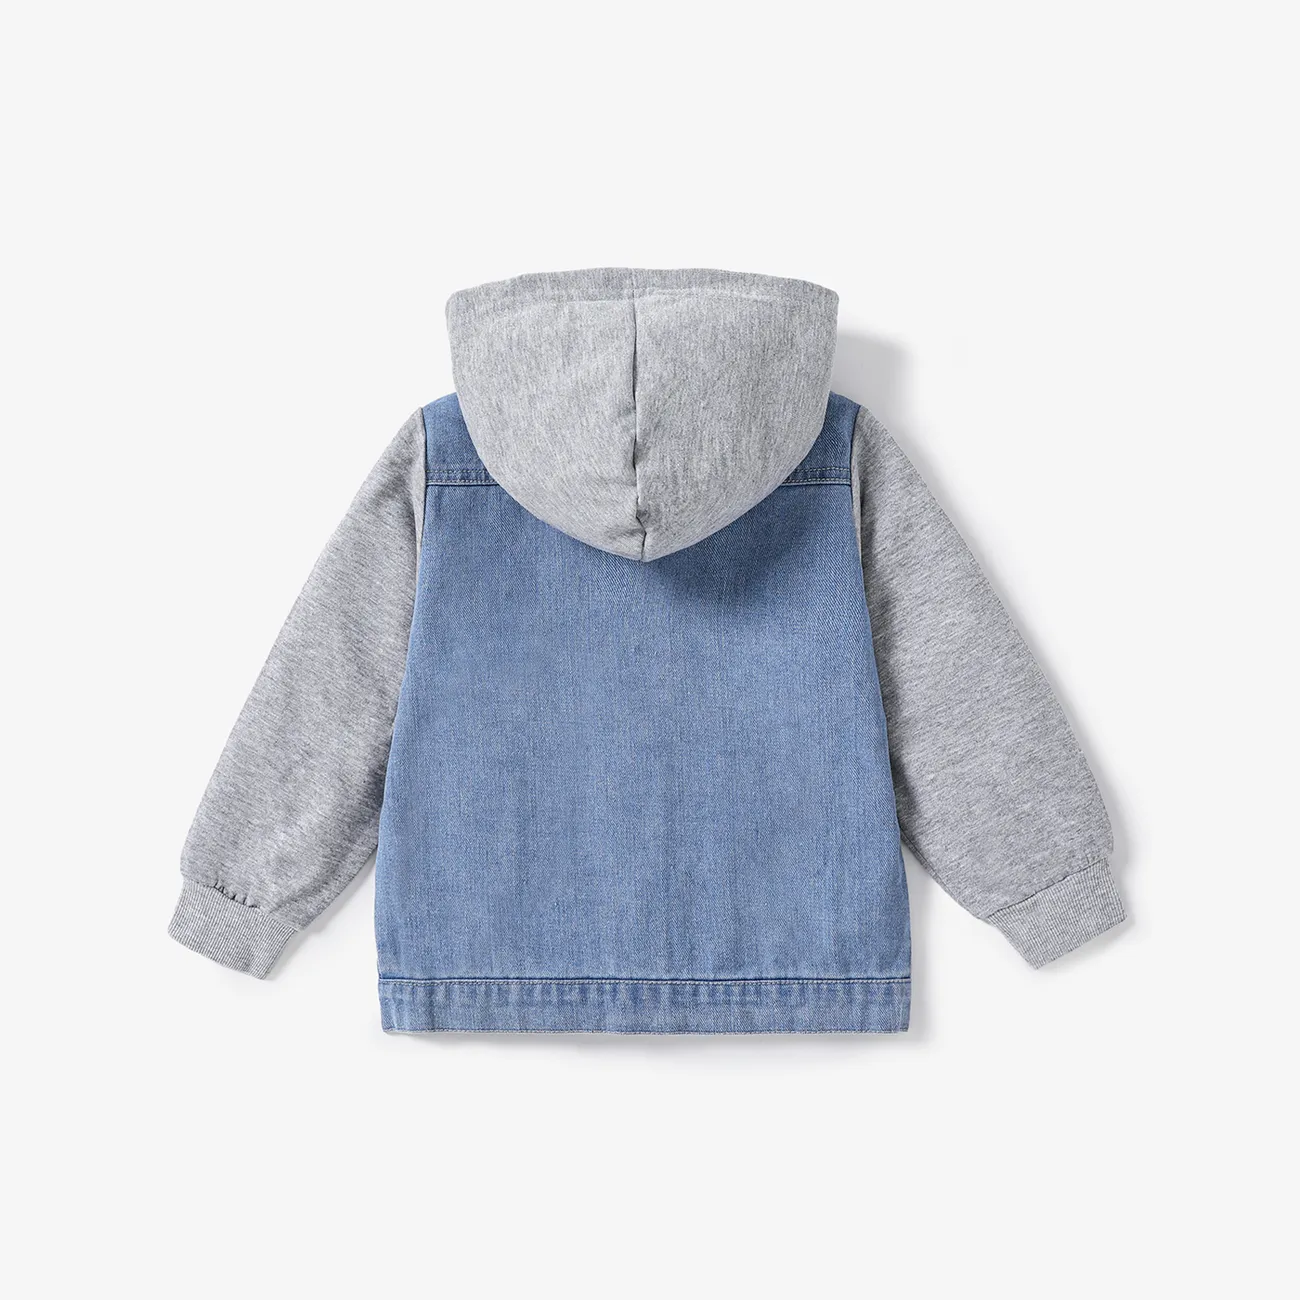 Criança Menino Costuras de tecido Avant-garde Blusões e casacos Cinzento Claro big image 1